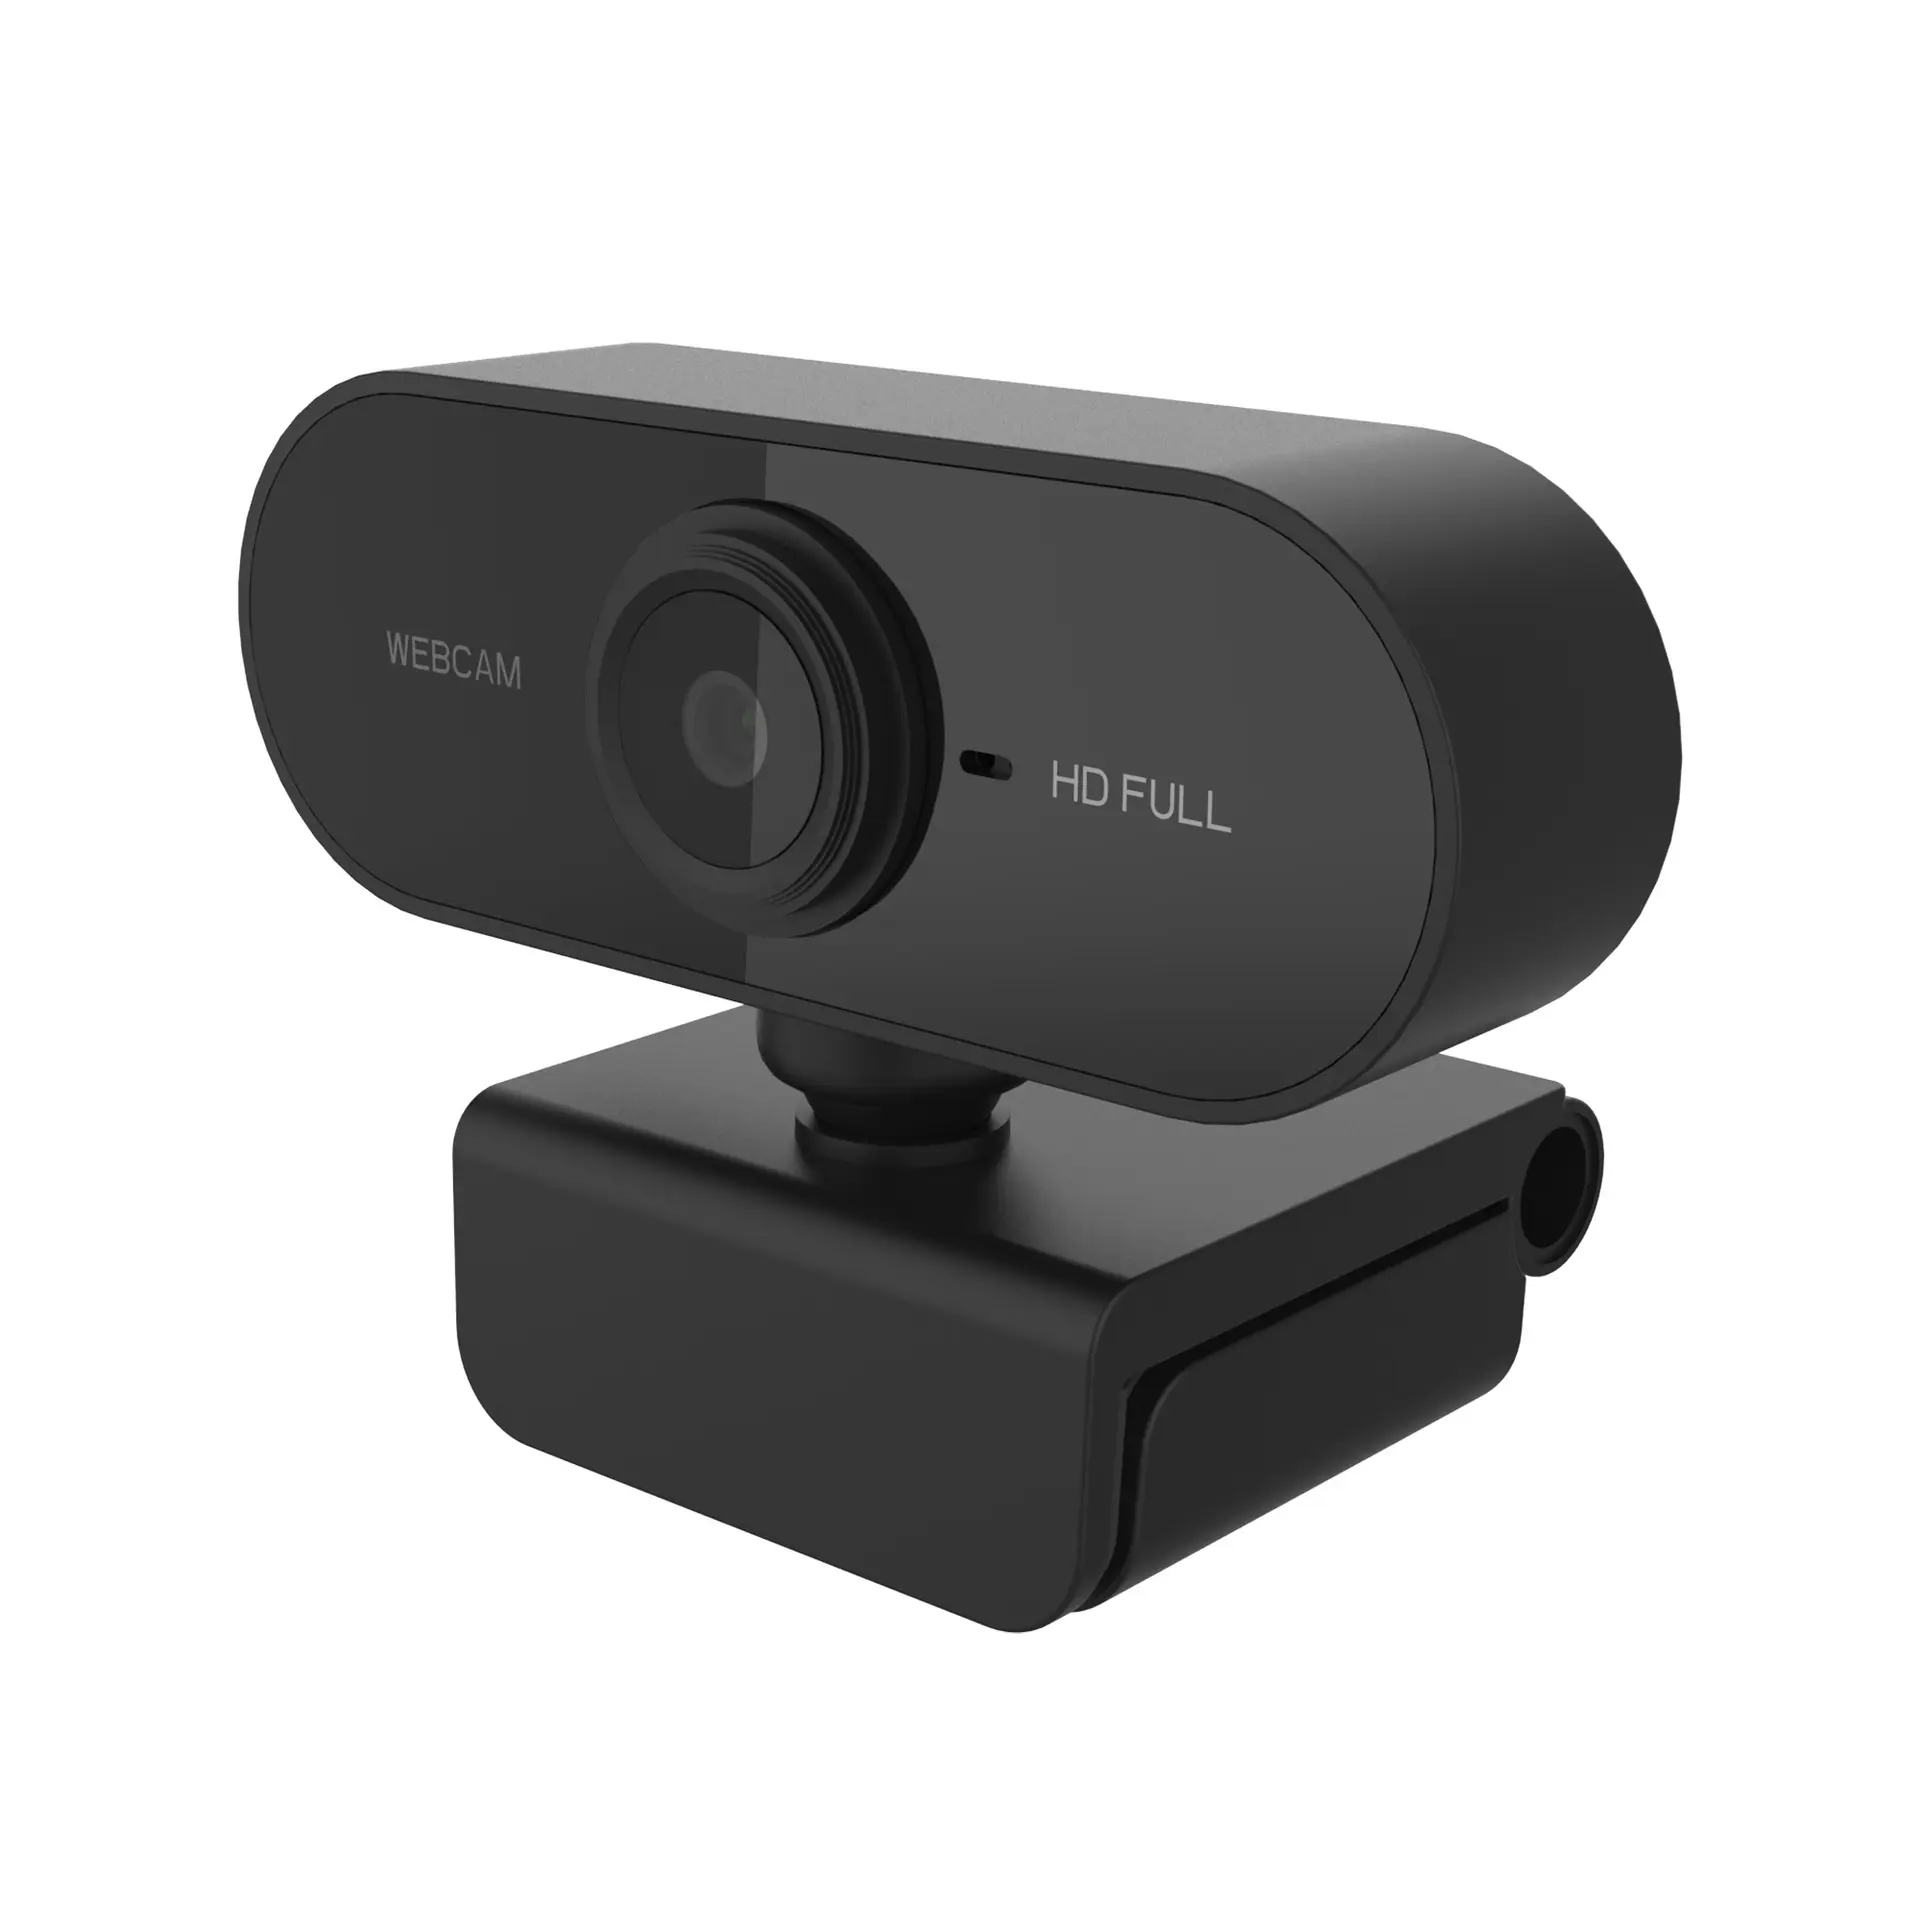 Fabrika doğrudan satış sıcak satış mic dahili tam hd 1080p webcam kamera pc kamerası bilgisayar iş toplantı için kamerası kamera